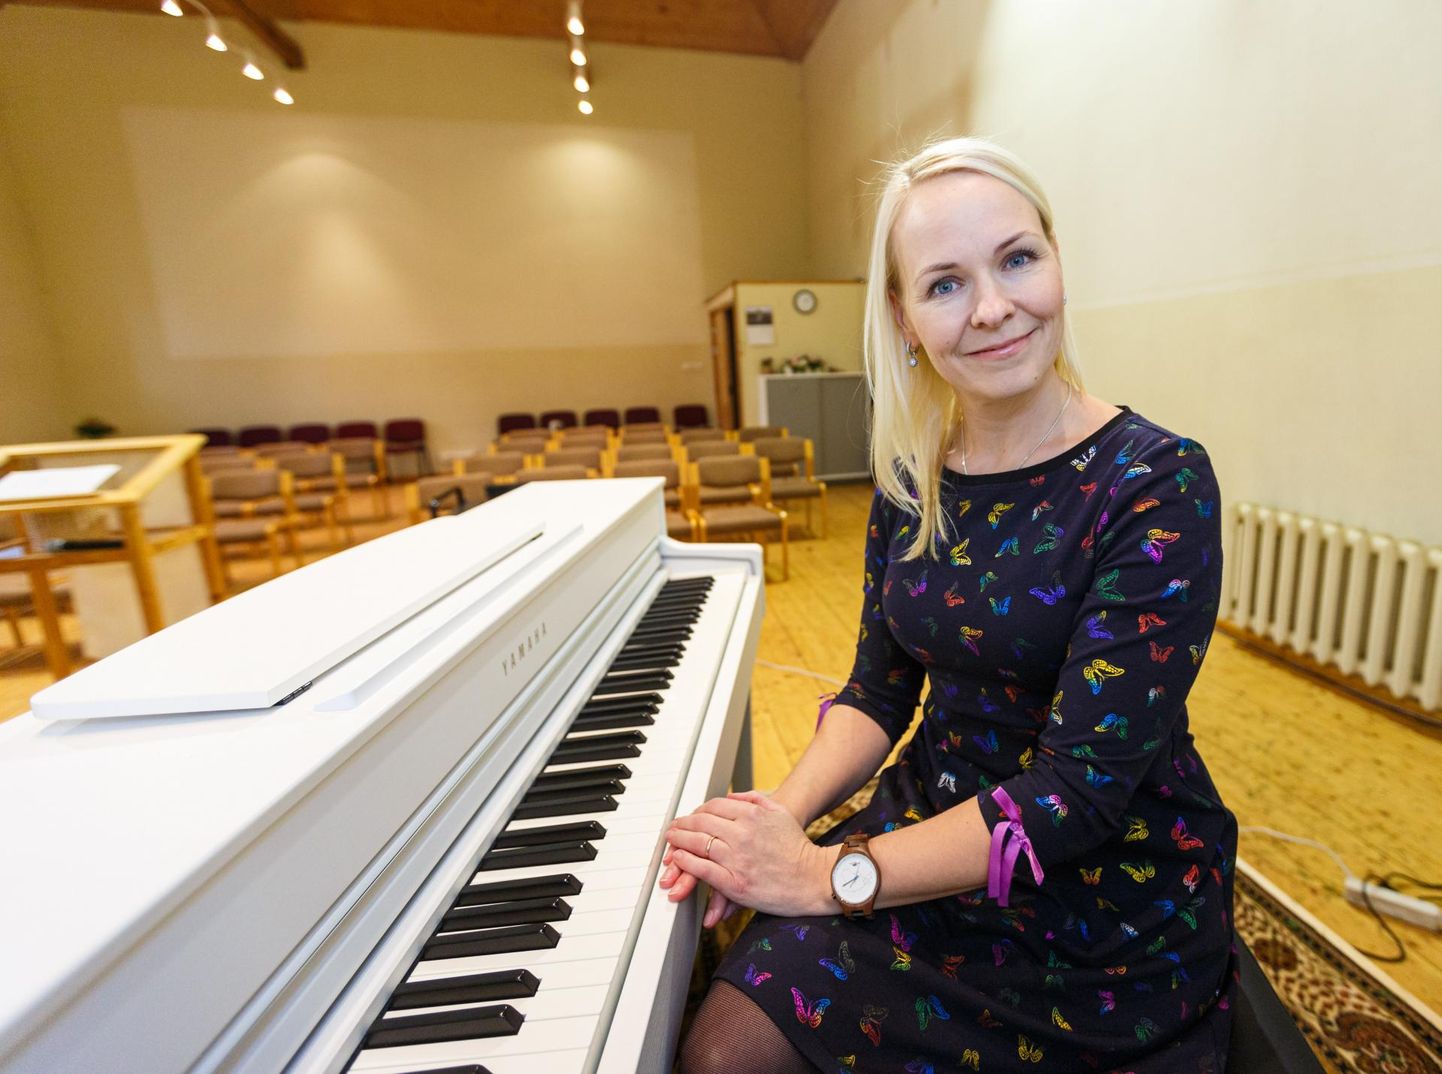 Muusika mängib Kati Tamme elus suurt rolli. Ta on Tartus Heino Elleri nimelises muusikakoolis õppinud klassikalist laulmist ja juhendab nüüd ise laululapsi.